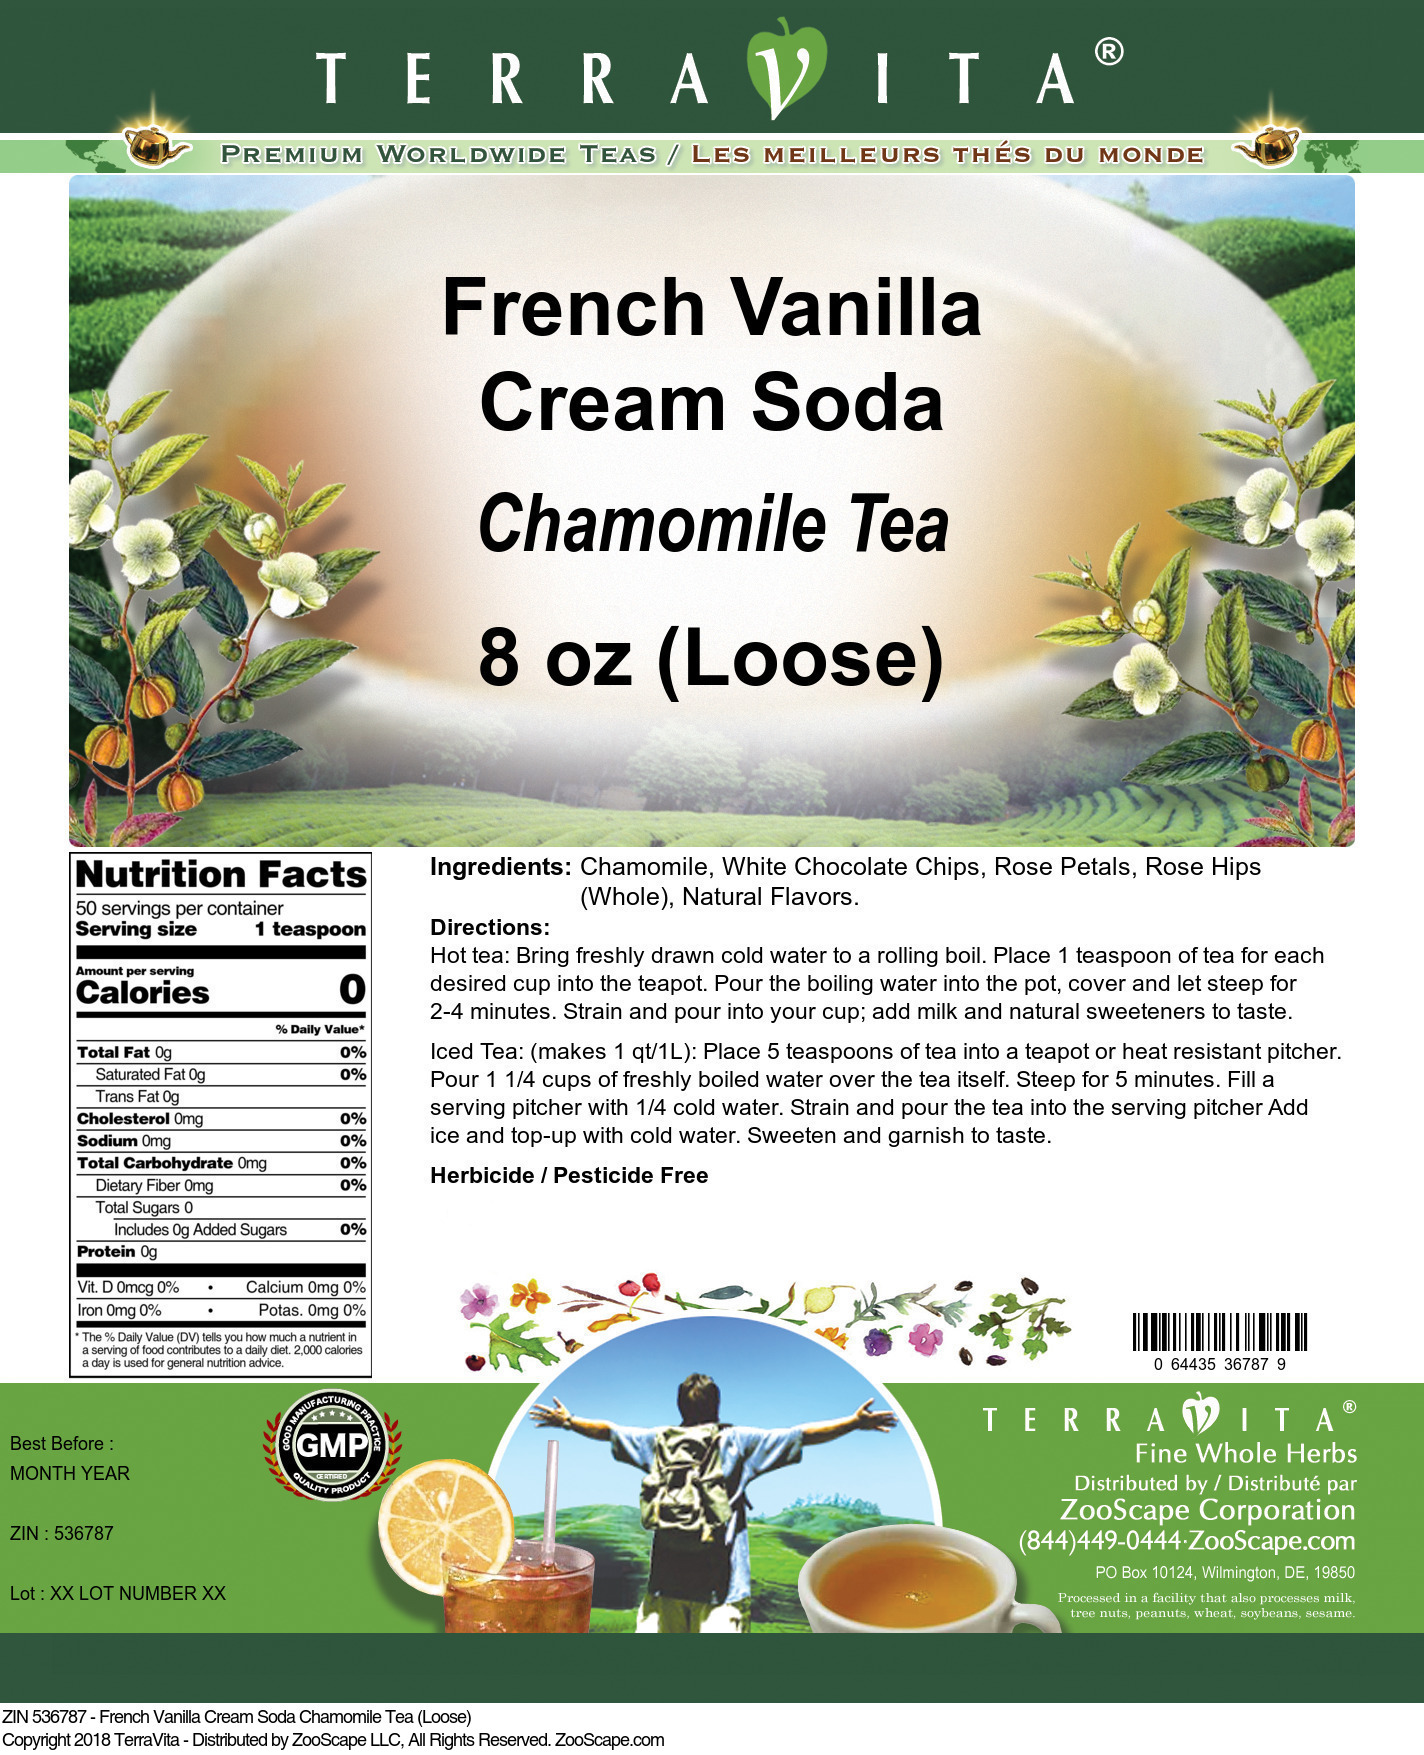 French Vanilla Cream Soda Chamomile Tea (Loose) - Label